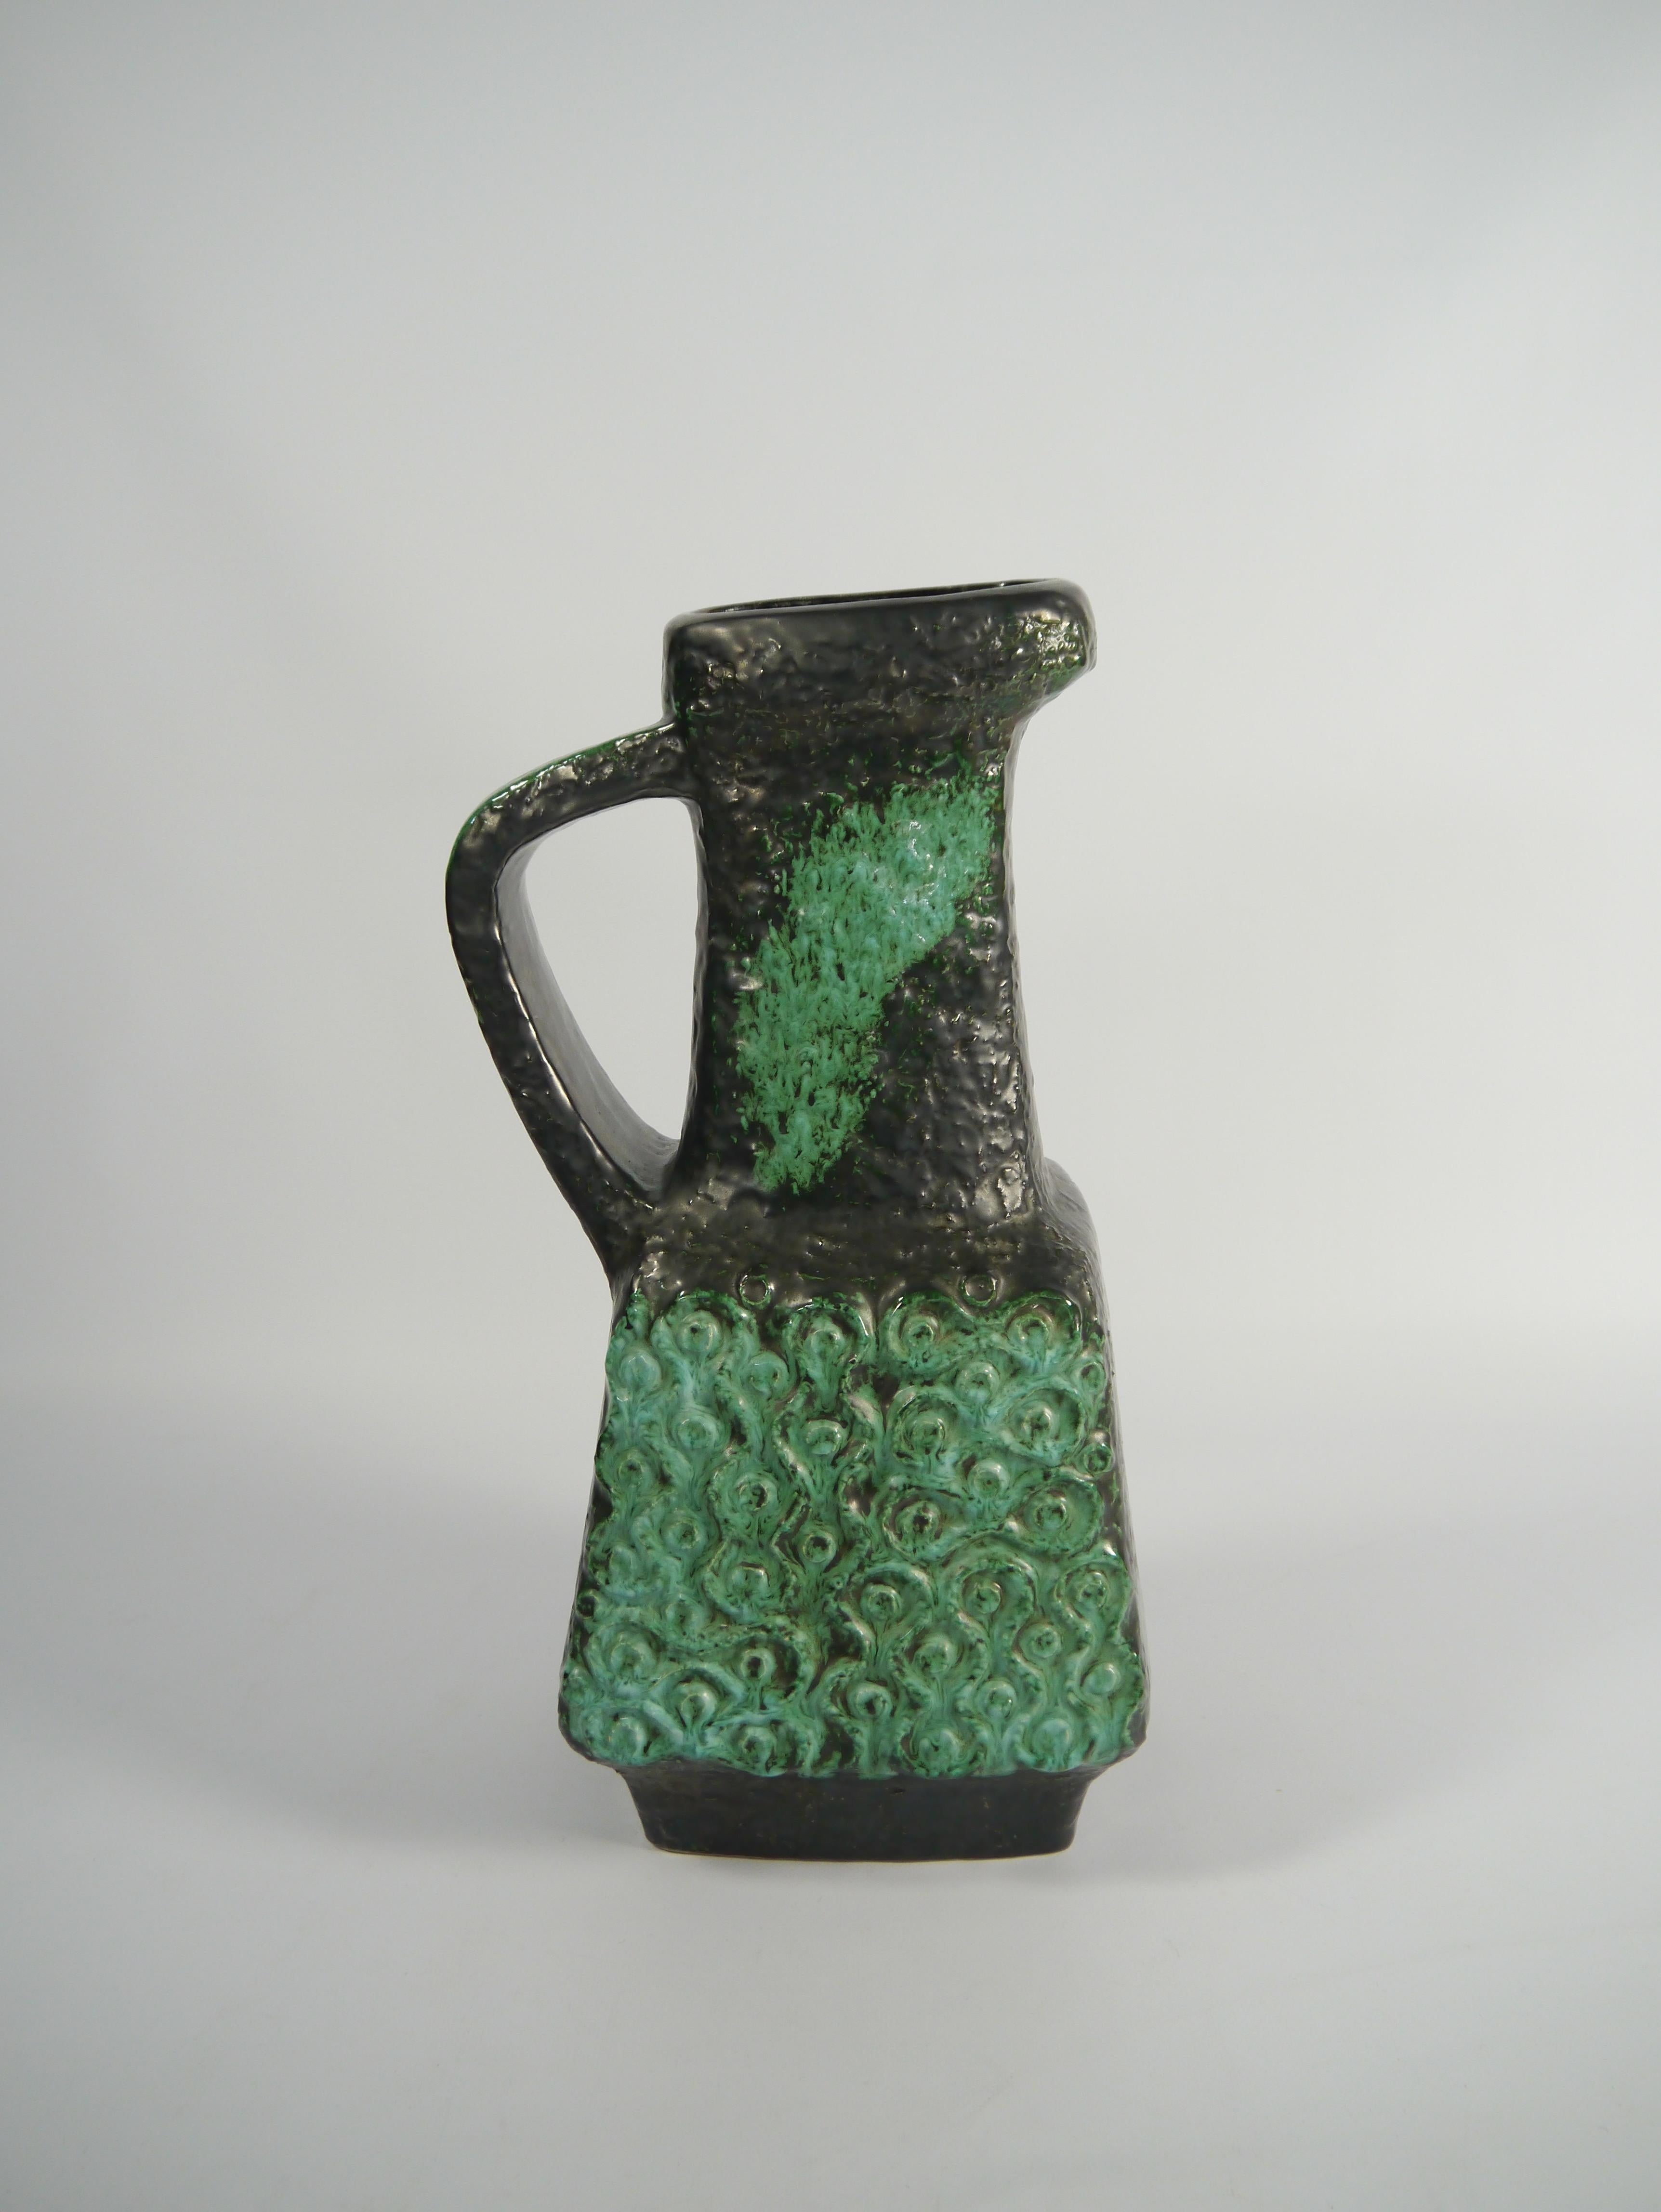 Hohe Keramikvase im brutalistischen Stil, hergestellt von BAY in den 1970er Jahren. Klare und gerade symmetrische Form mit graffitiartigem grünem Muster, in der Tat ein unterhaltsames Material.